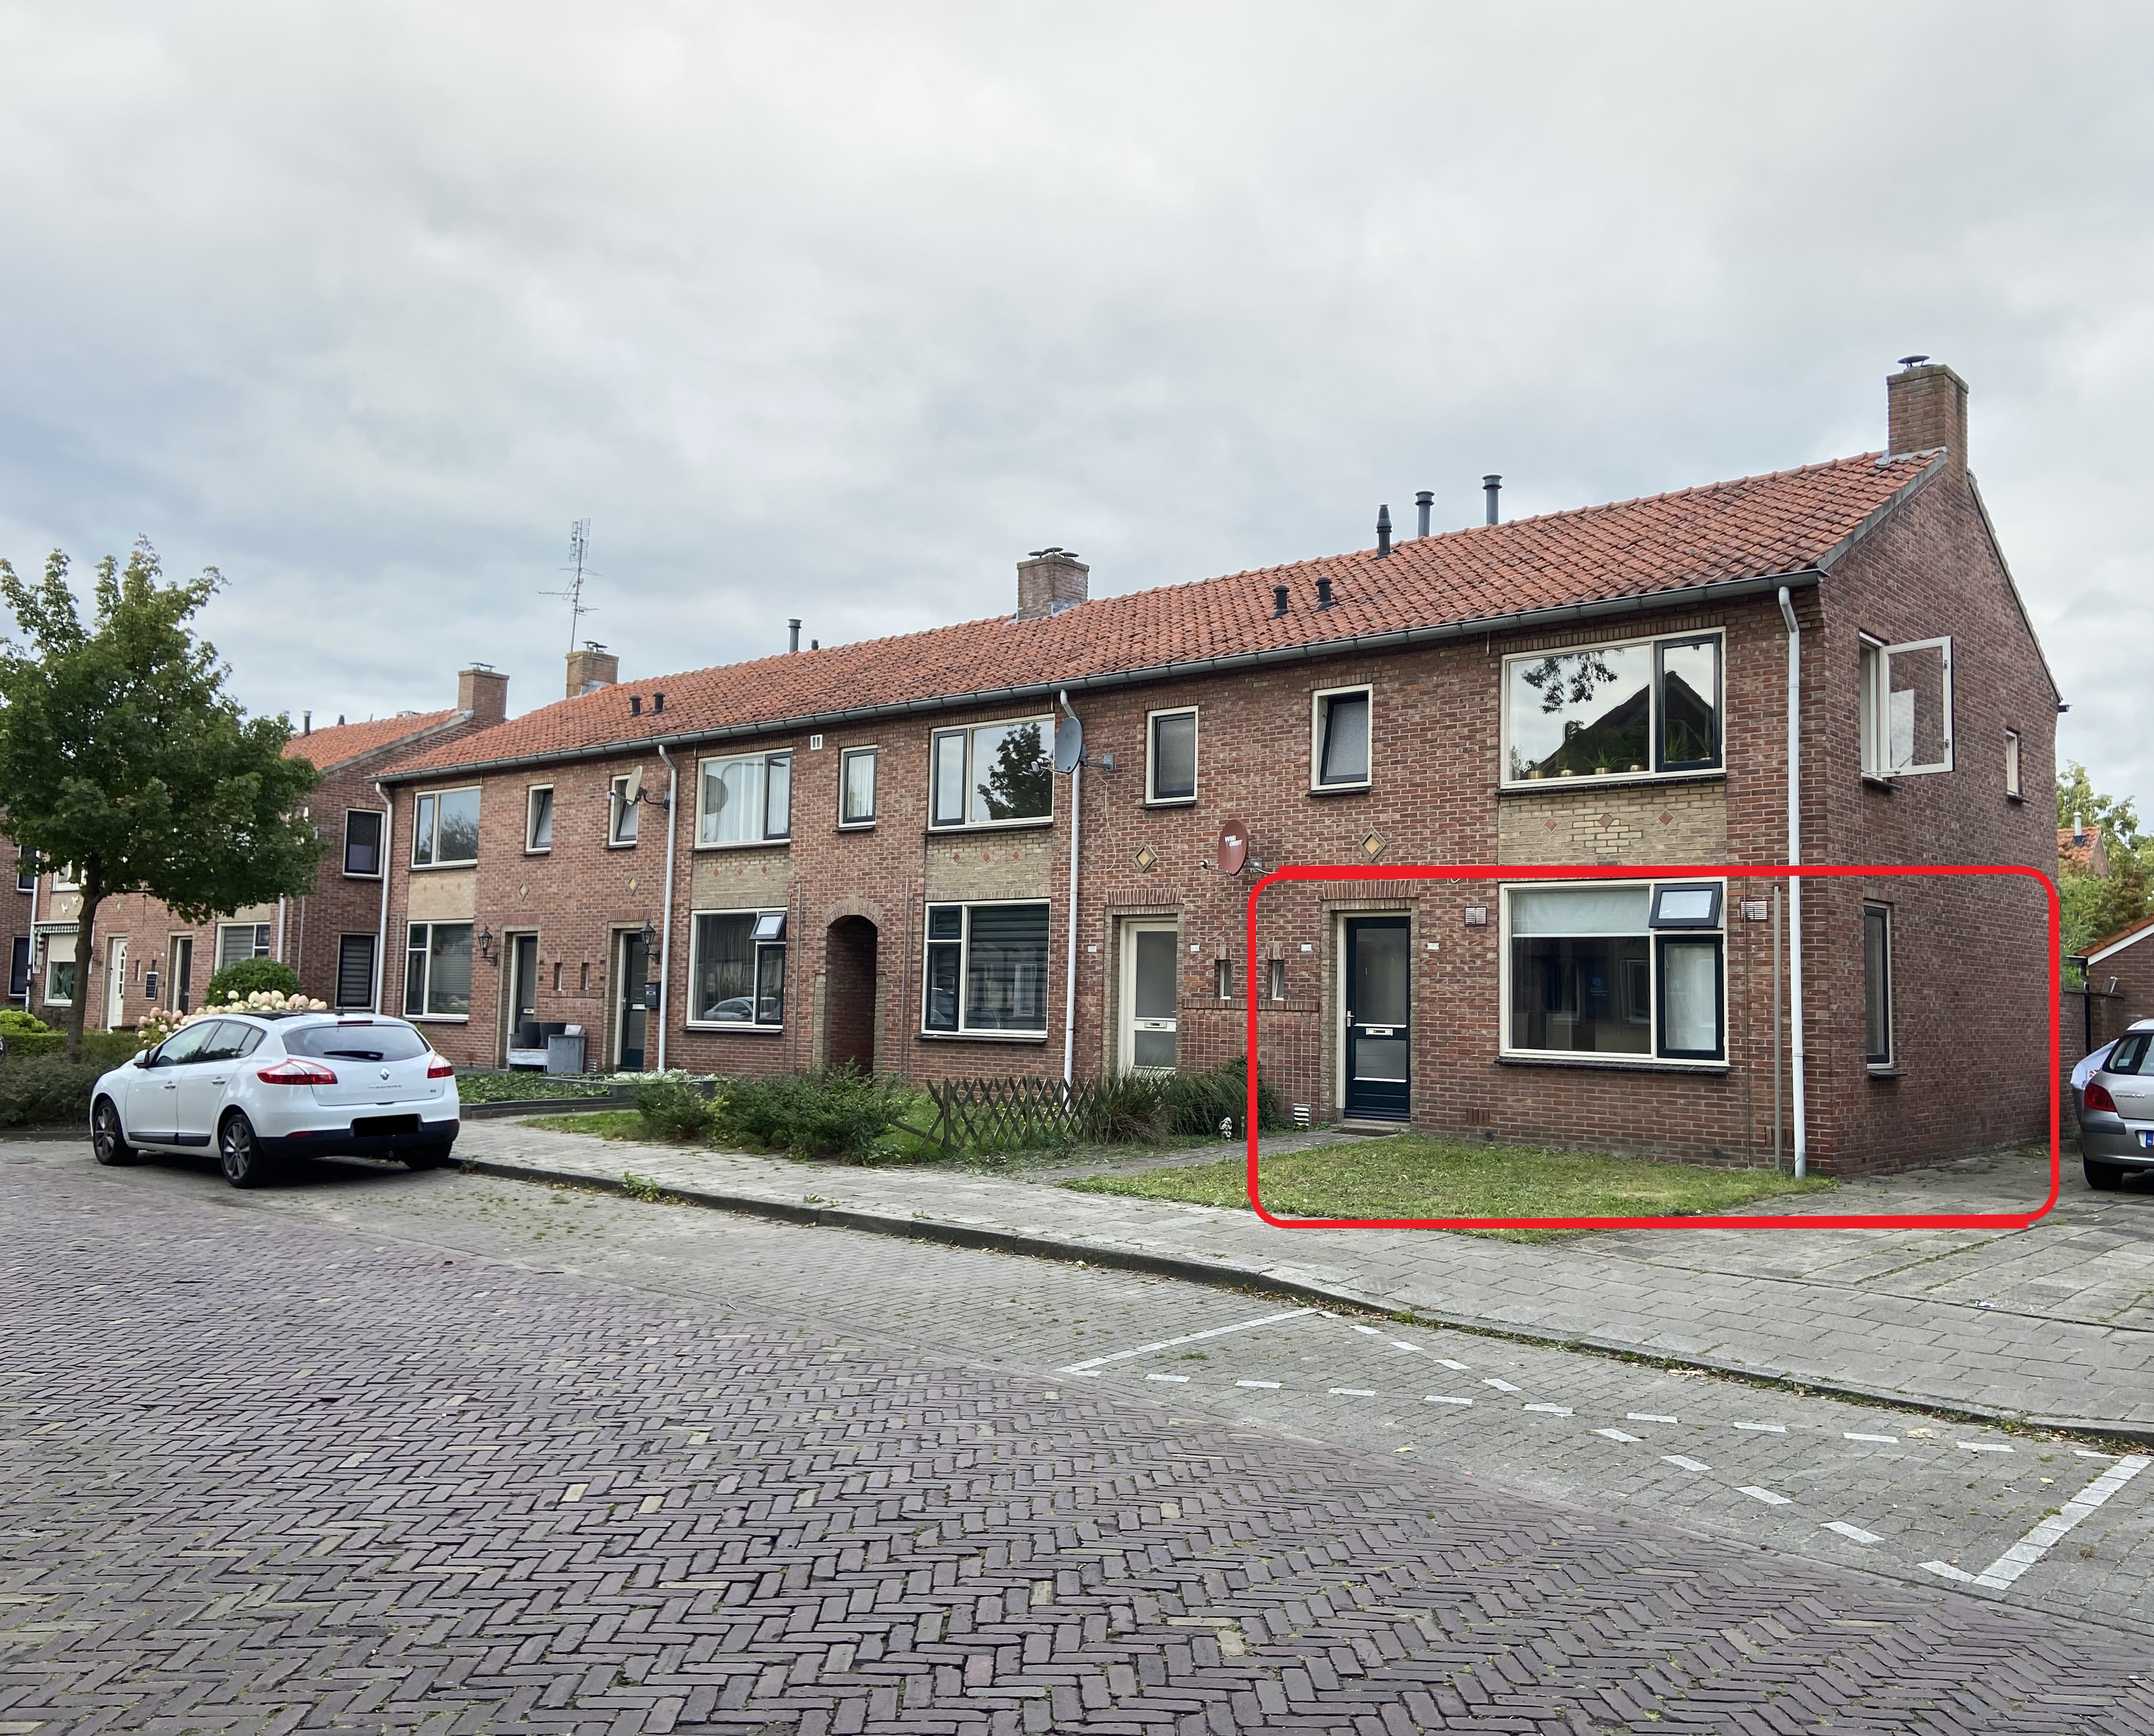 Julianastraat 31, 7591 EK Denekamp, Nederland